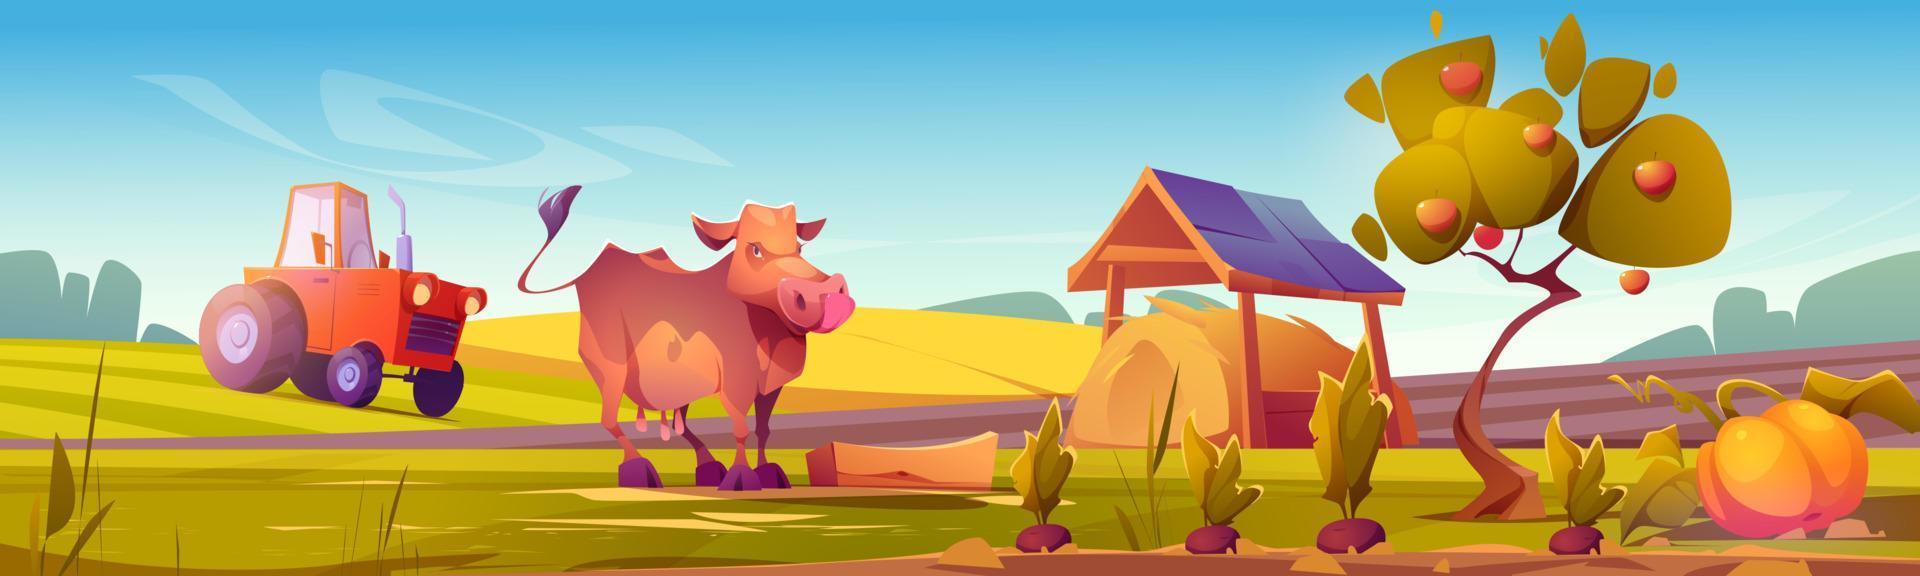 landsbygden scen med ko, bruka fält och traktor vektor